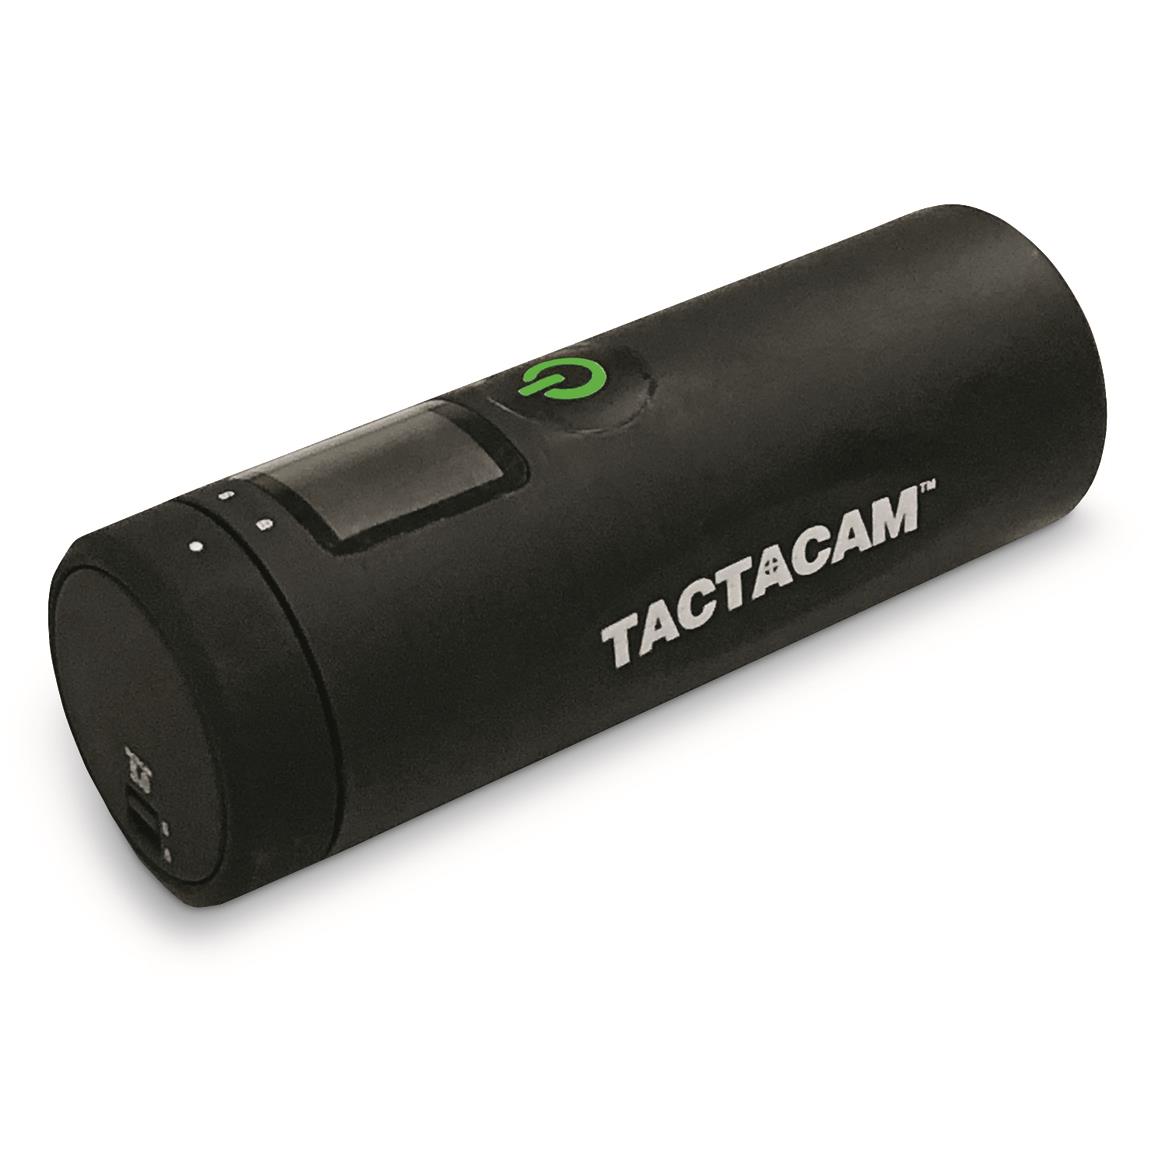 Tactacam 5.0 Remote